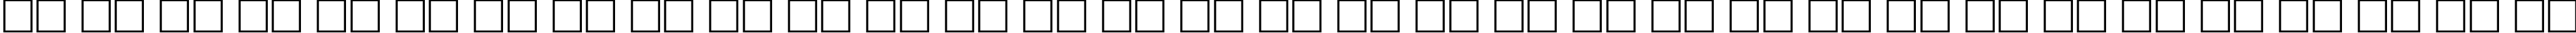 Пример написания русского алфавита шрифтом Evita Regular